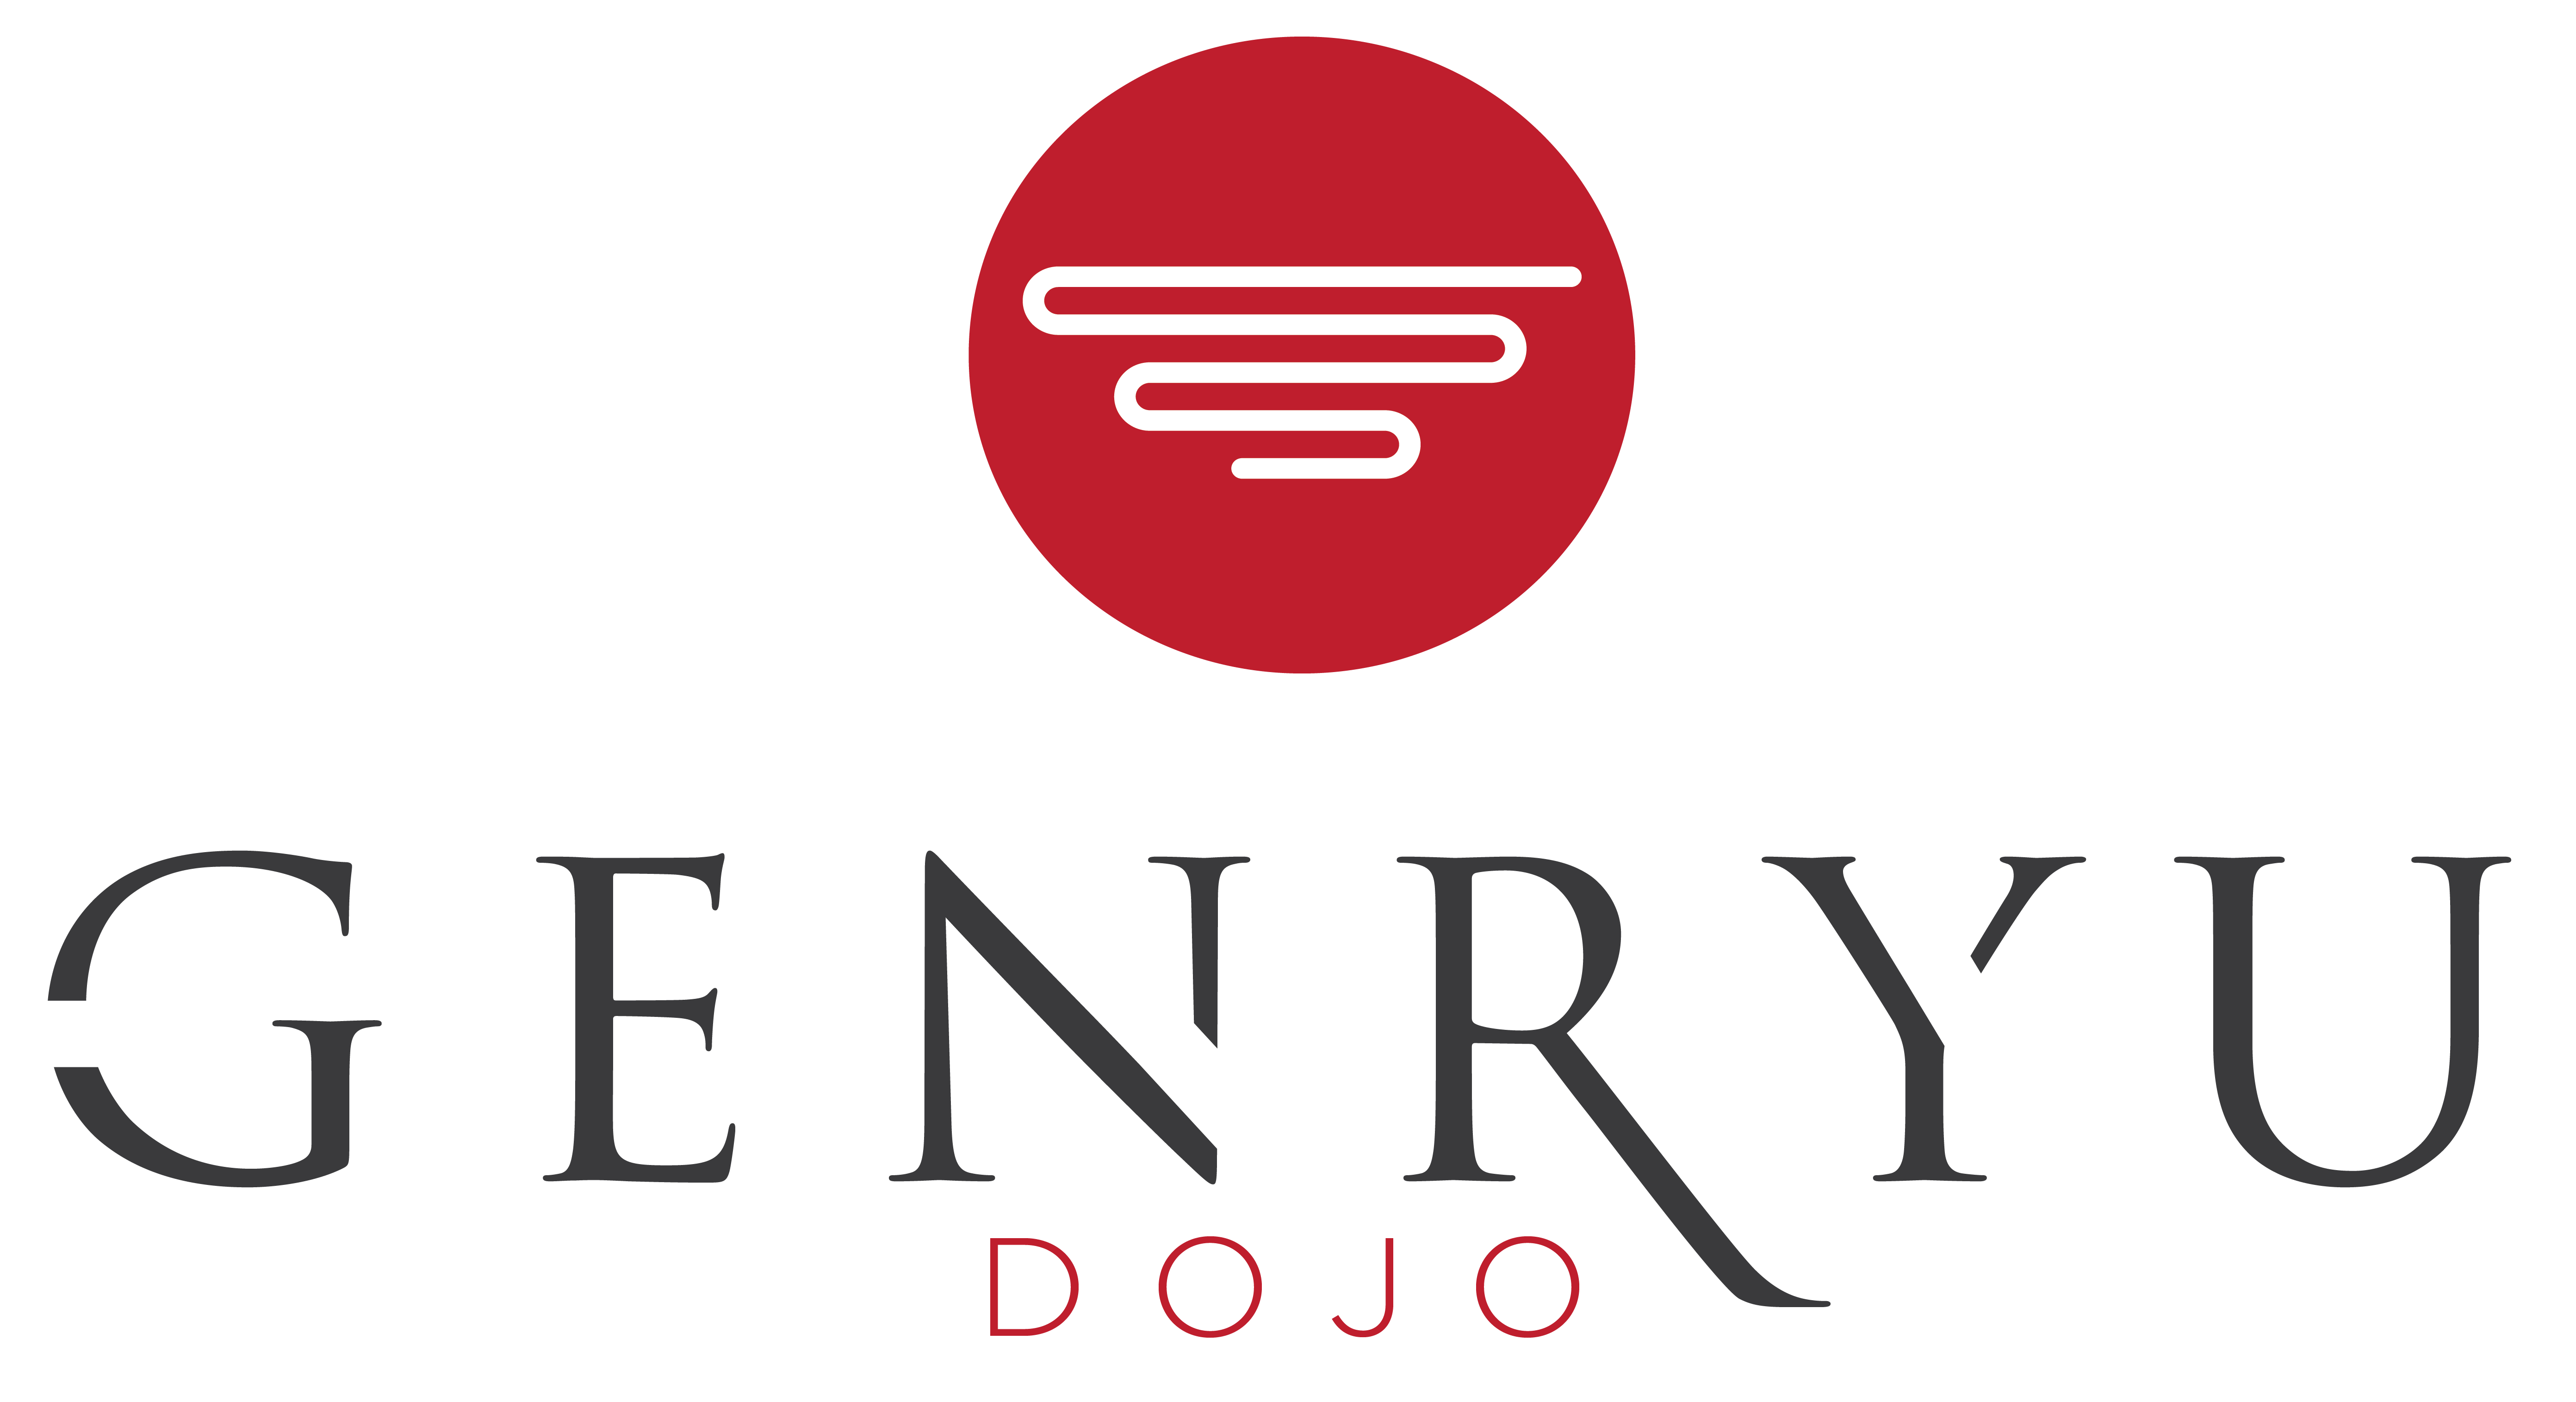 Genryu Dojo Logo Design | Logo Design for Dojo